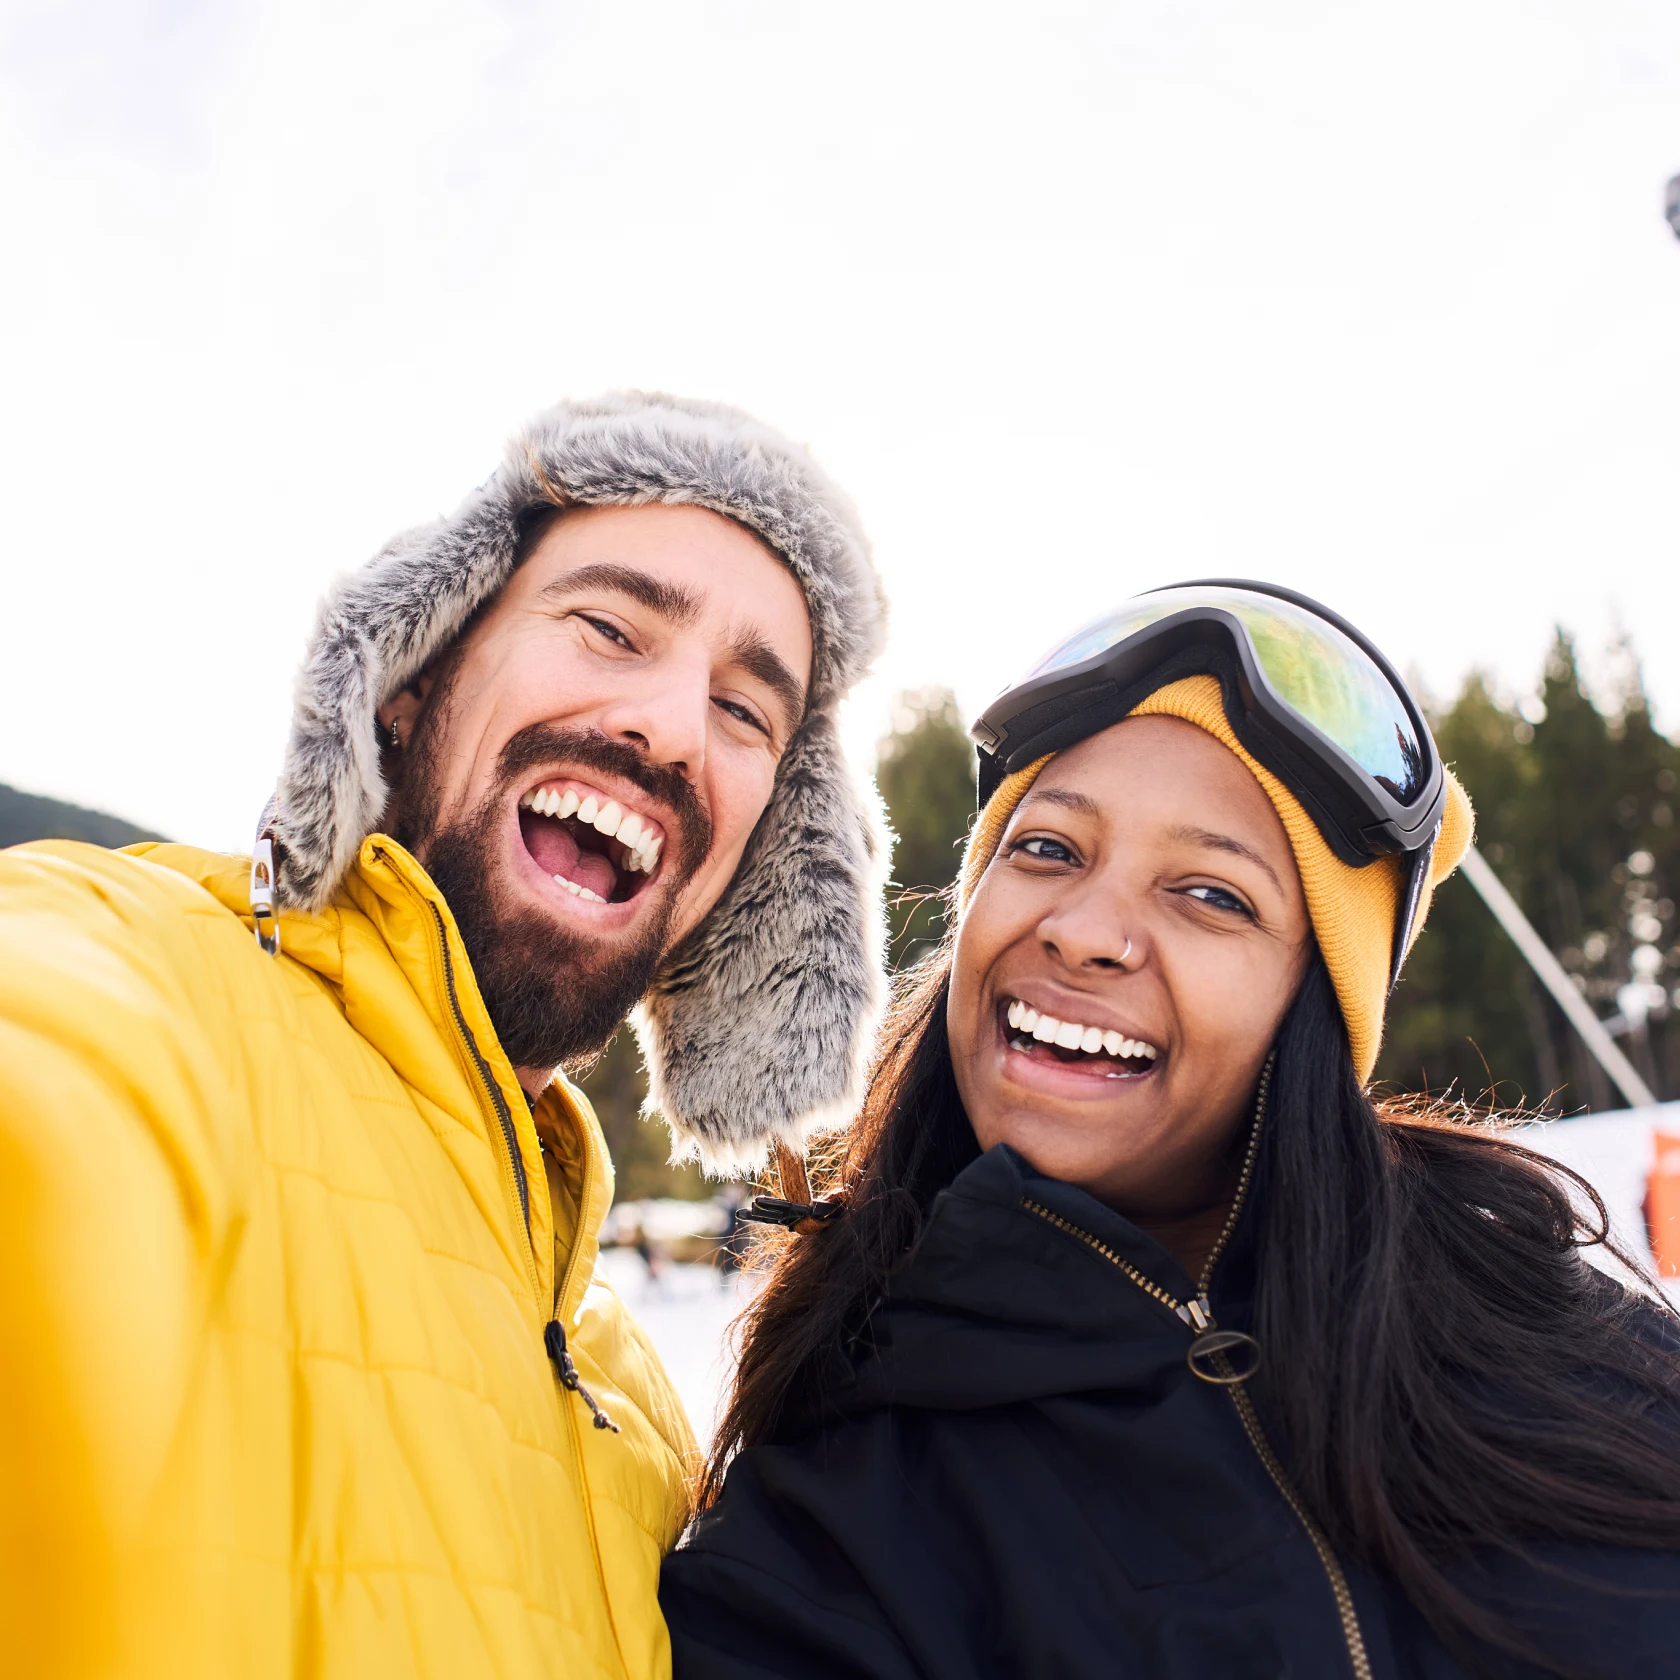 Junge Männer und Frauen lächeln in die Kamera, draußen im Schnee, mit Mützen für kaltes Wetter und dicken Jacken